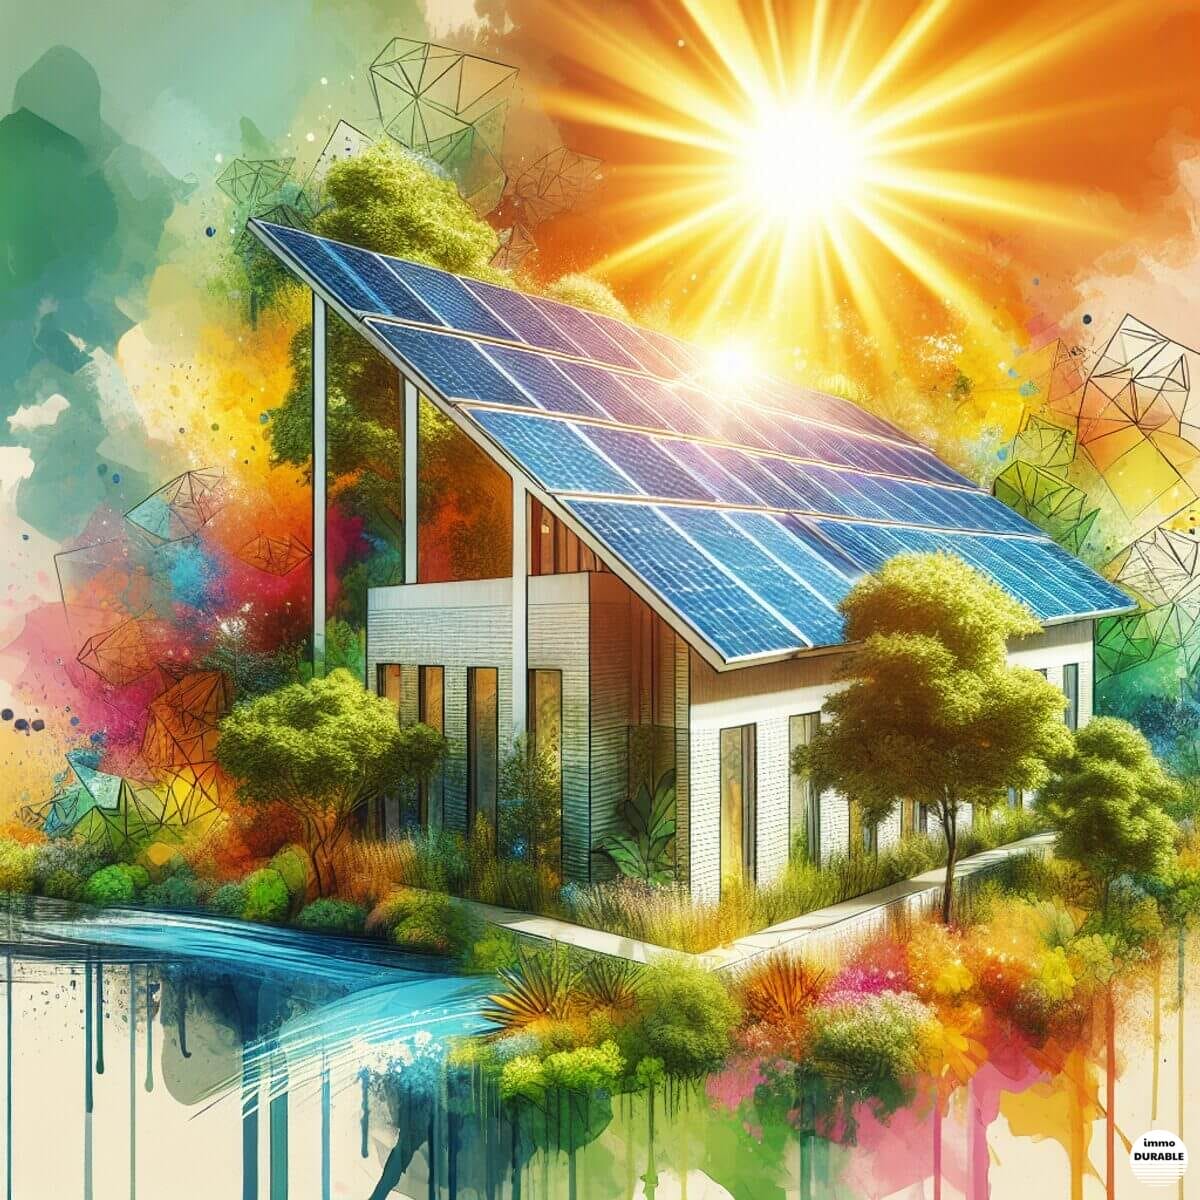 Un bâtiment moderne et écologique avec des panneaux solaires, entouré d'une végétation luxuriante et d'un soleil éclatant en arrière-plan.